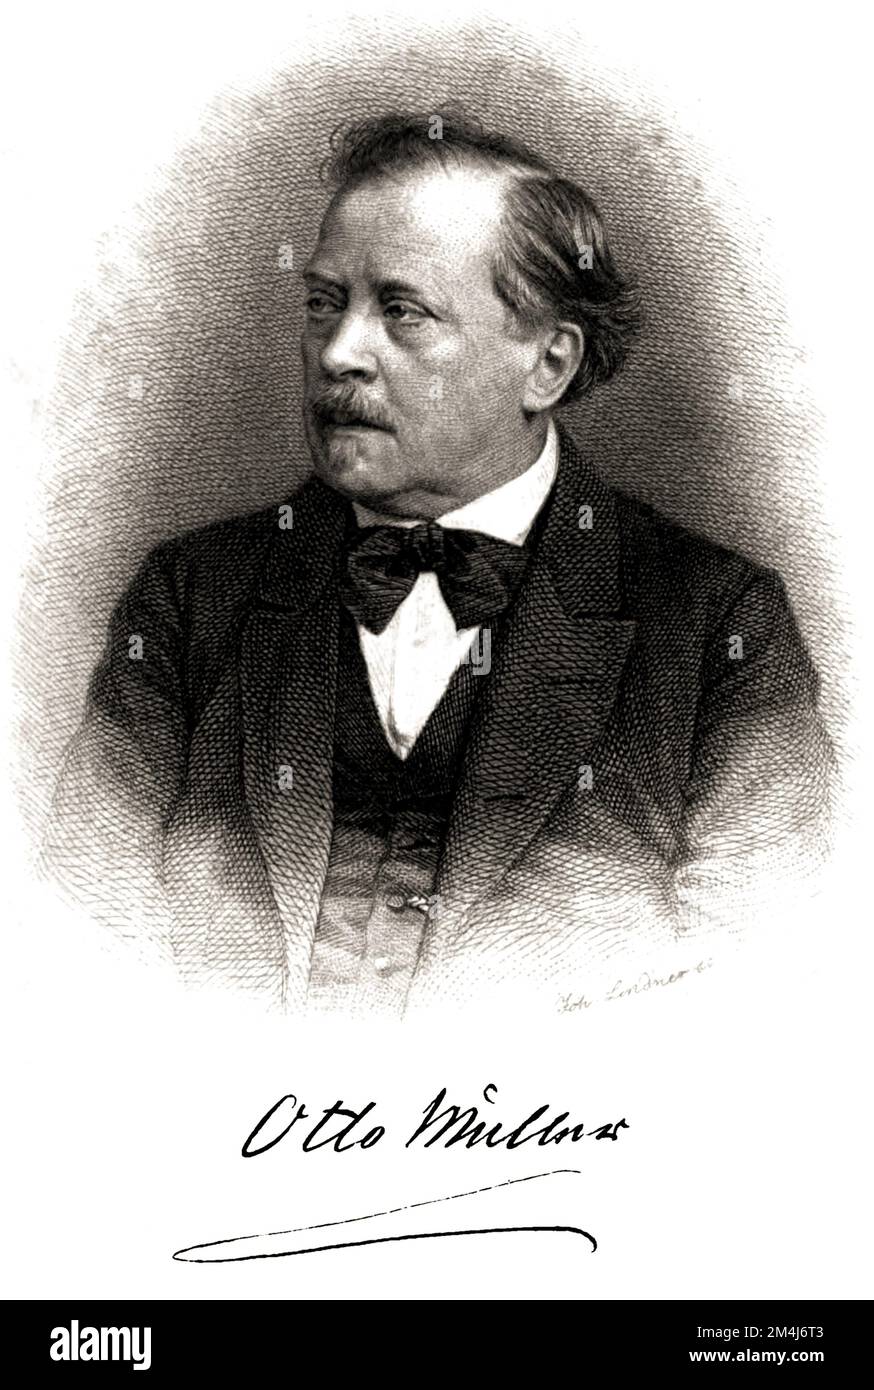 1873 ca, GERMANY : The german writer and novellist OTTO MUELLER ( Müller, 1816 - 1894 ) . Portrait by engraver JOHANN LINDER . - HISTORY - FOTO STORICHE - PORTRAIT - RITRATTO - SCRITTORE - LETTERATURA - LITERATURE - letterato - ritratto - portrait - '800 - 800's - OTTOCENTO - tie bow - papillon - fiocco - cravatta - gilet - baffi - moustache - ILLUSTRAZIONE - ILLUSTRATION - ENGRAVING - INCISIONE - AUTOGRAFO - FIRMA - SIGNATURE - AUTOGRAPH ---  Archivio GBB Stock Photo